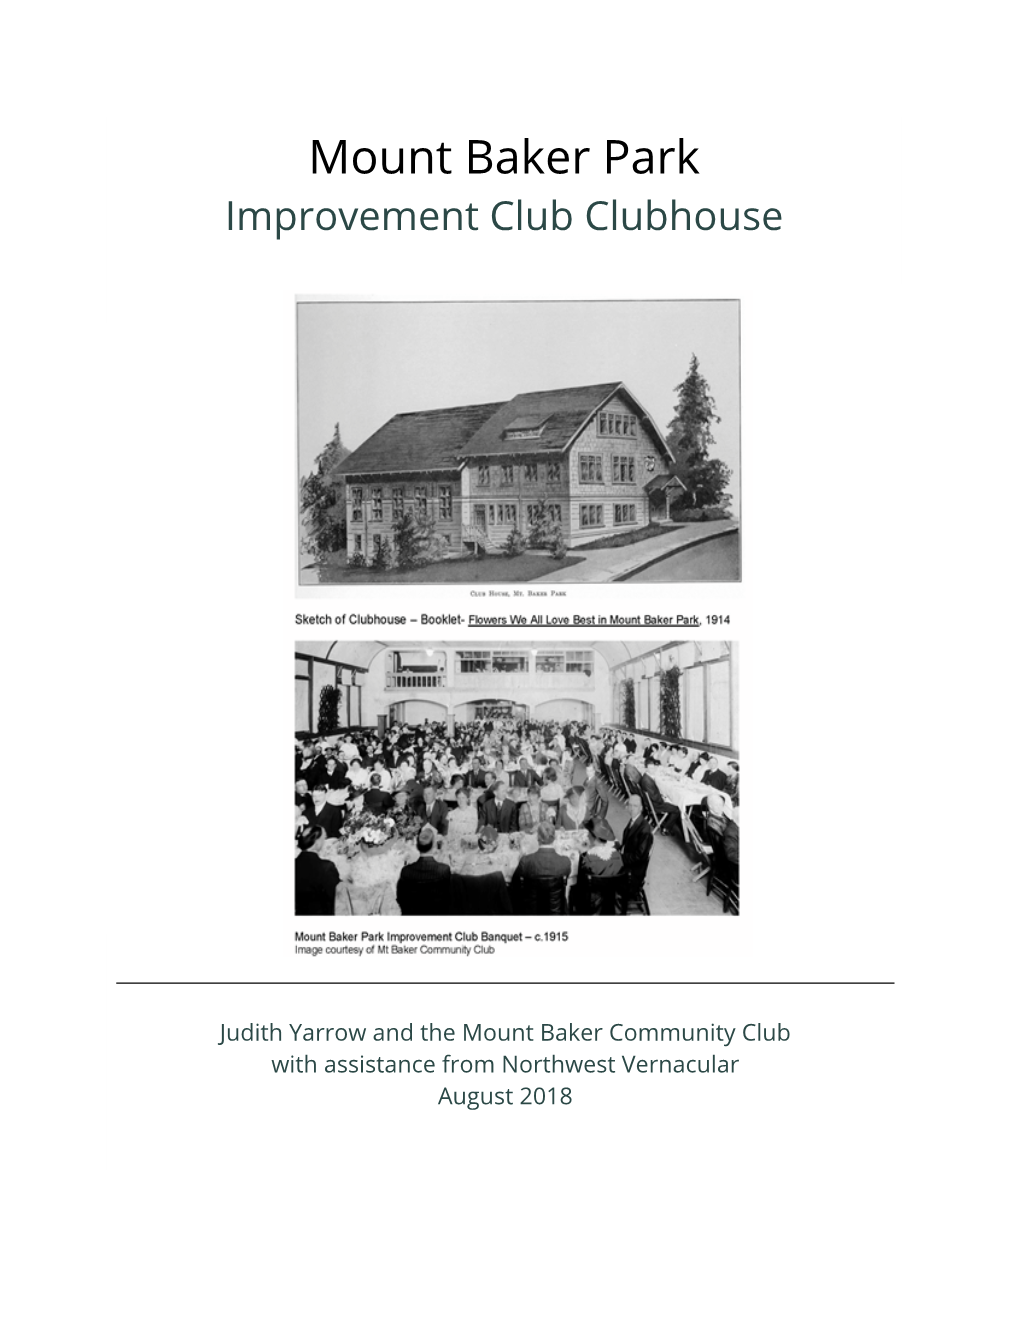 Mount Baker Park Improvement Club Clubhouse